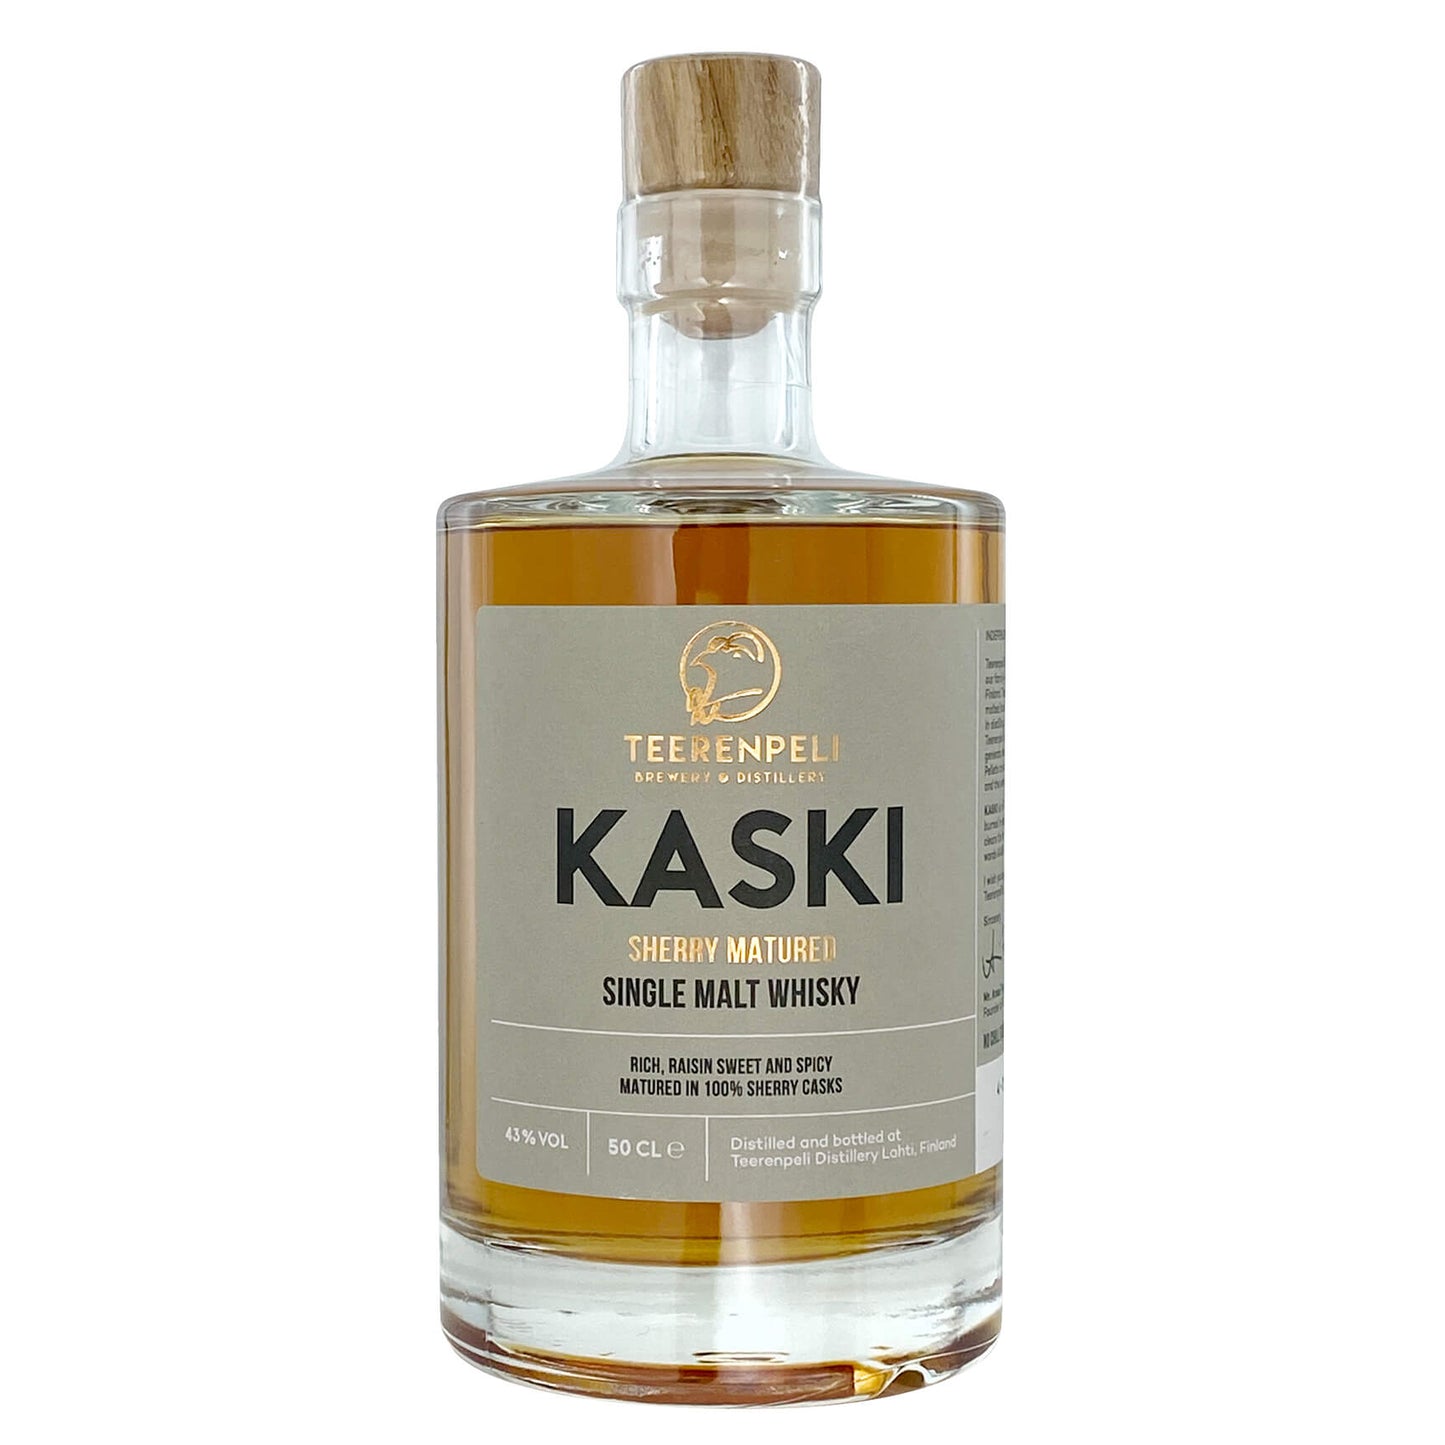 Teerenpeli Kaski Single Malt Whisky 43% 0,5l